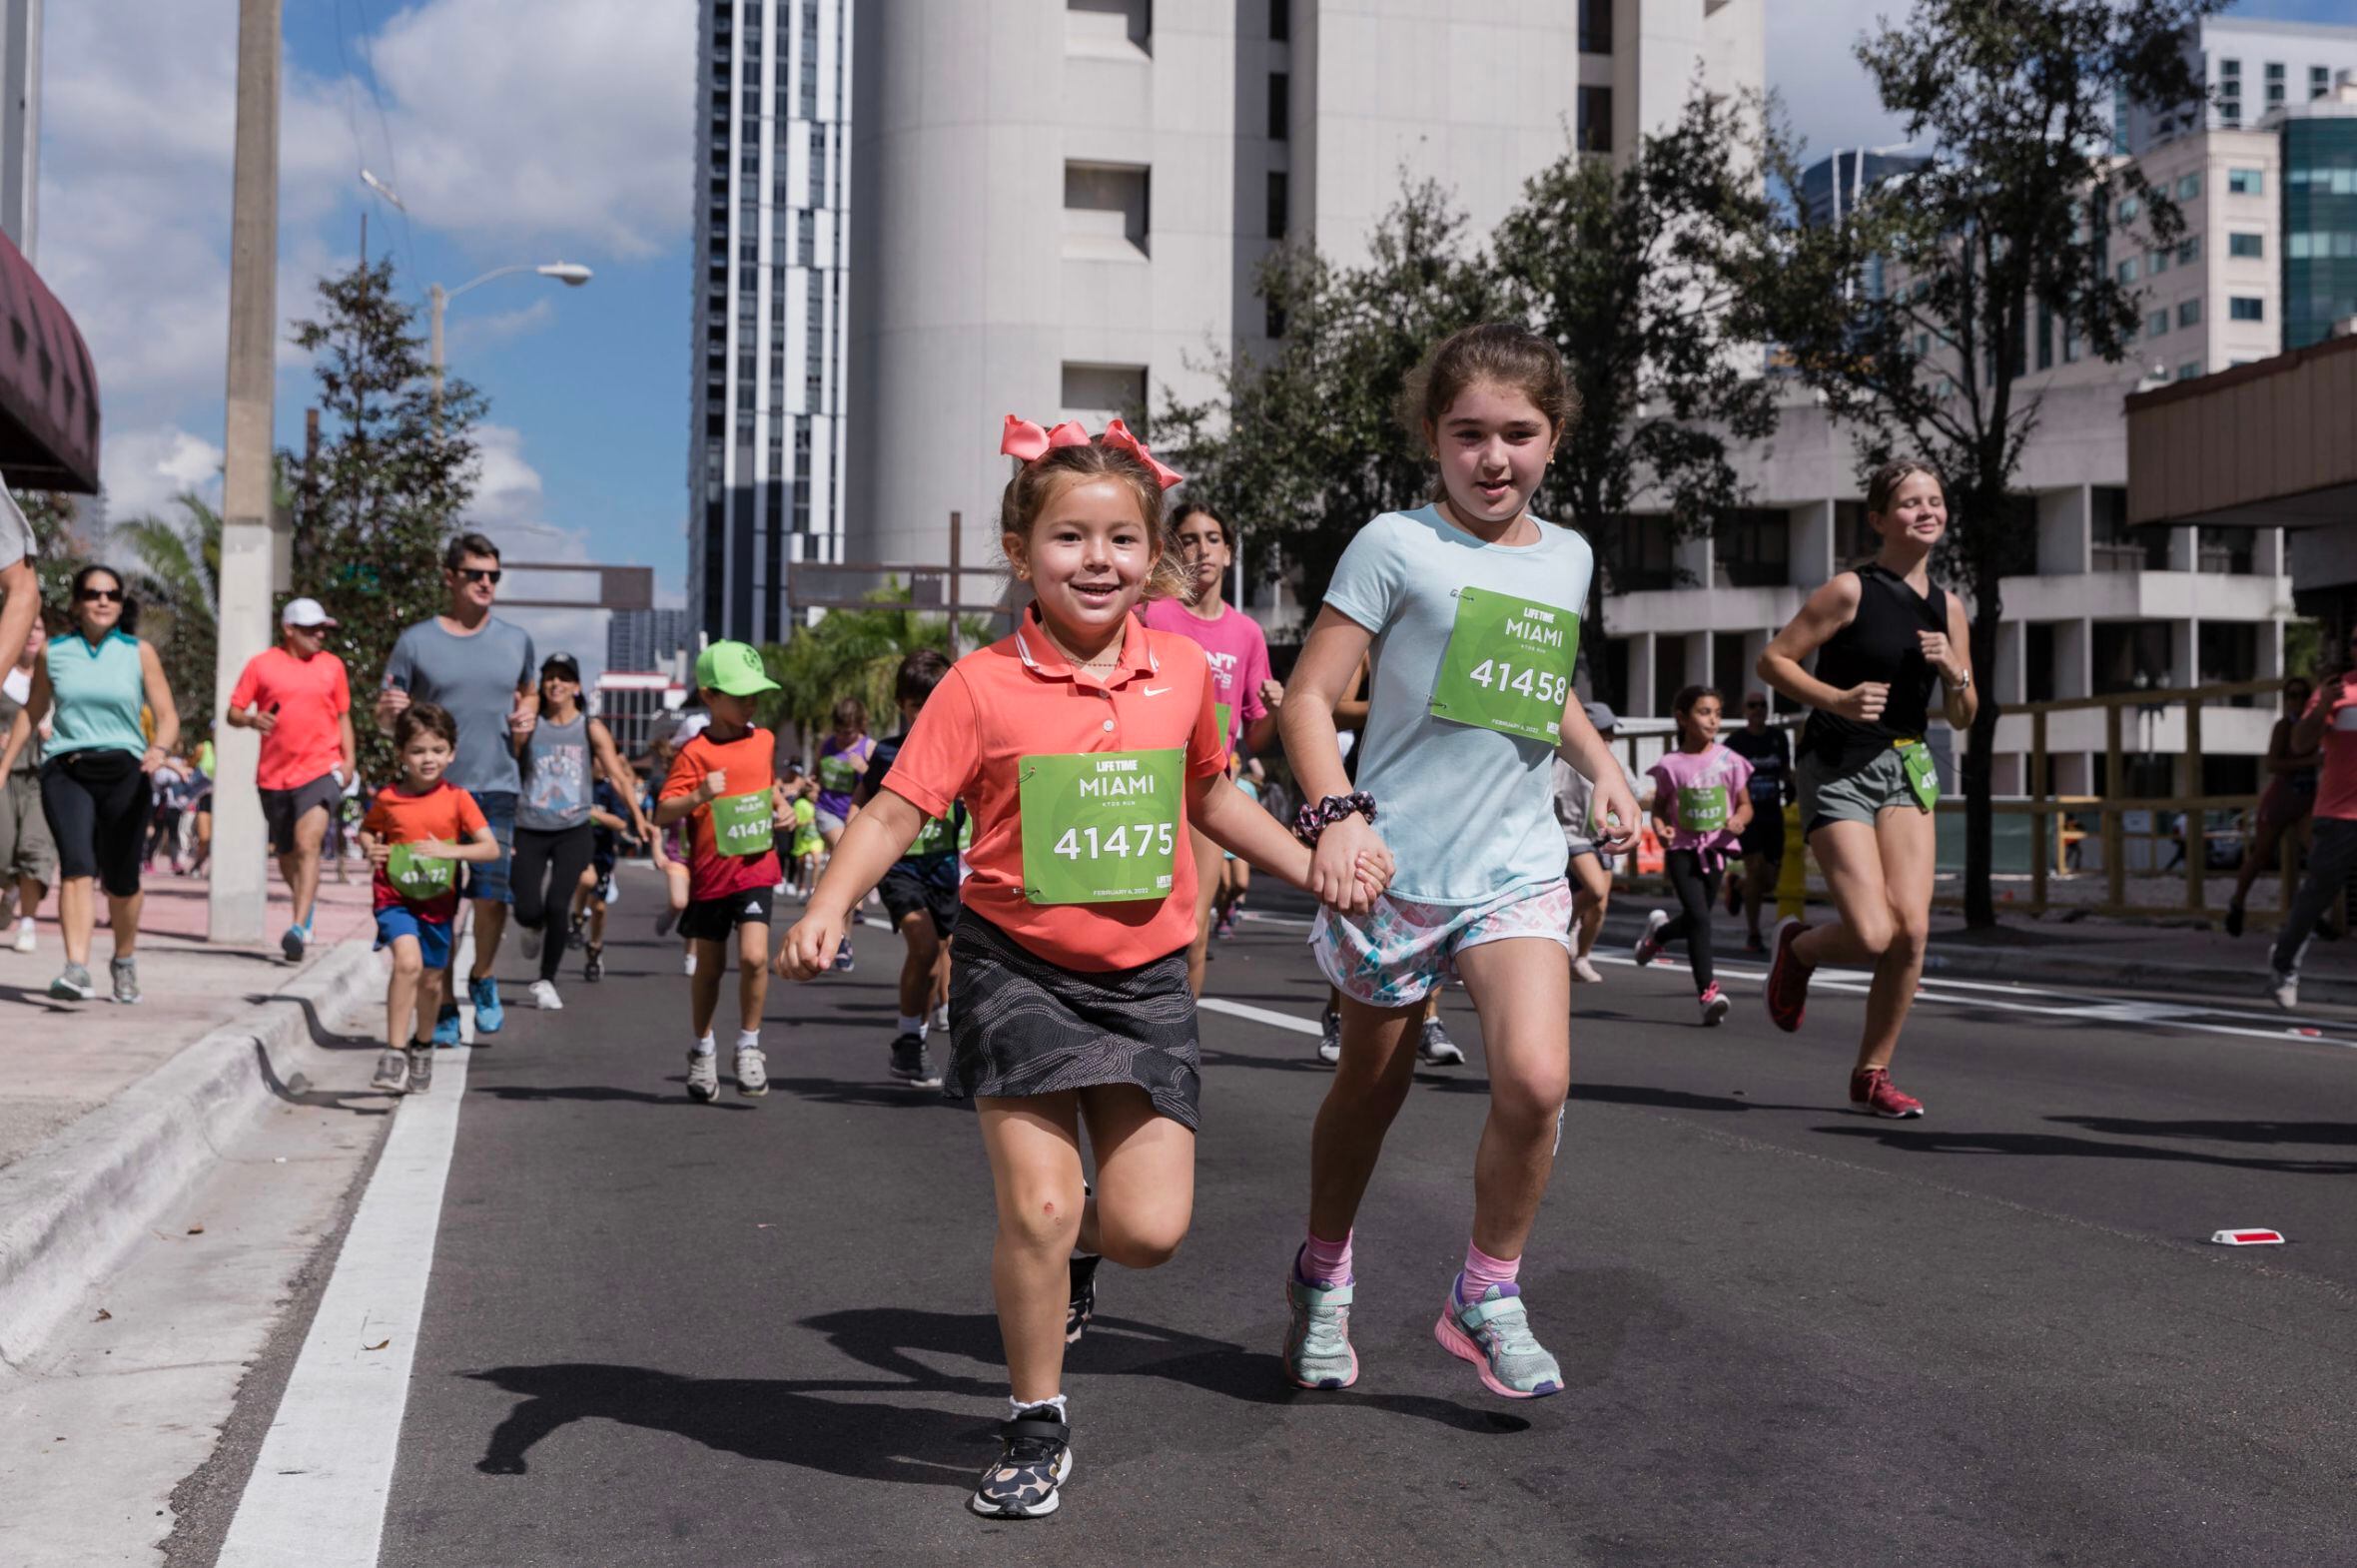 Kids Run Miami le permitirá correr a los niños de secundaria durante la última milla del Maratón de Miami.